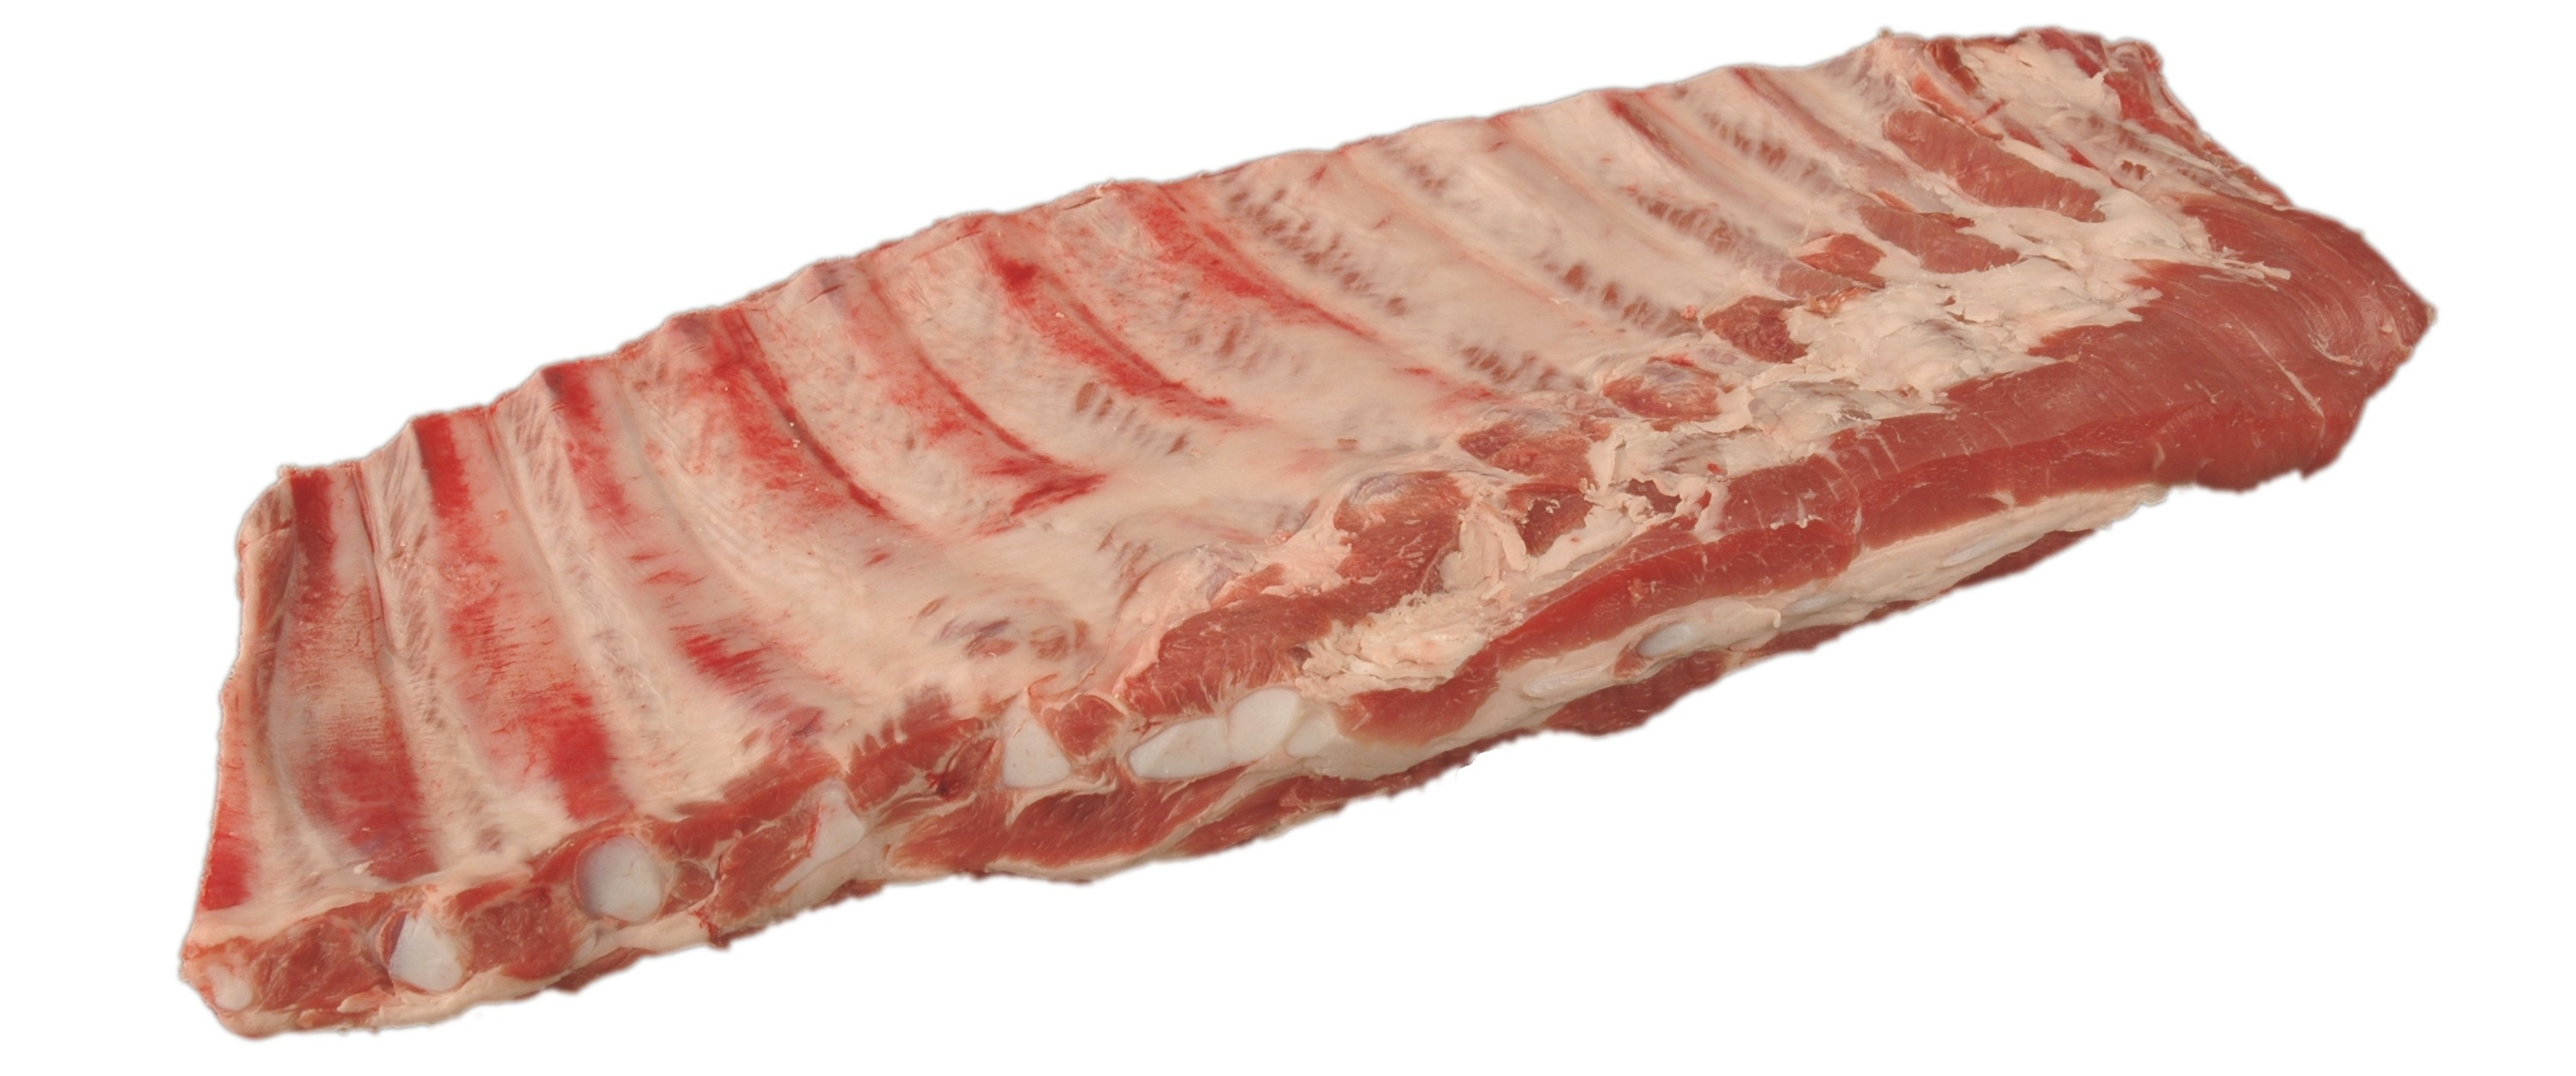 pork spare ribs